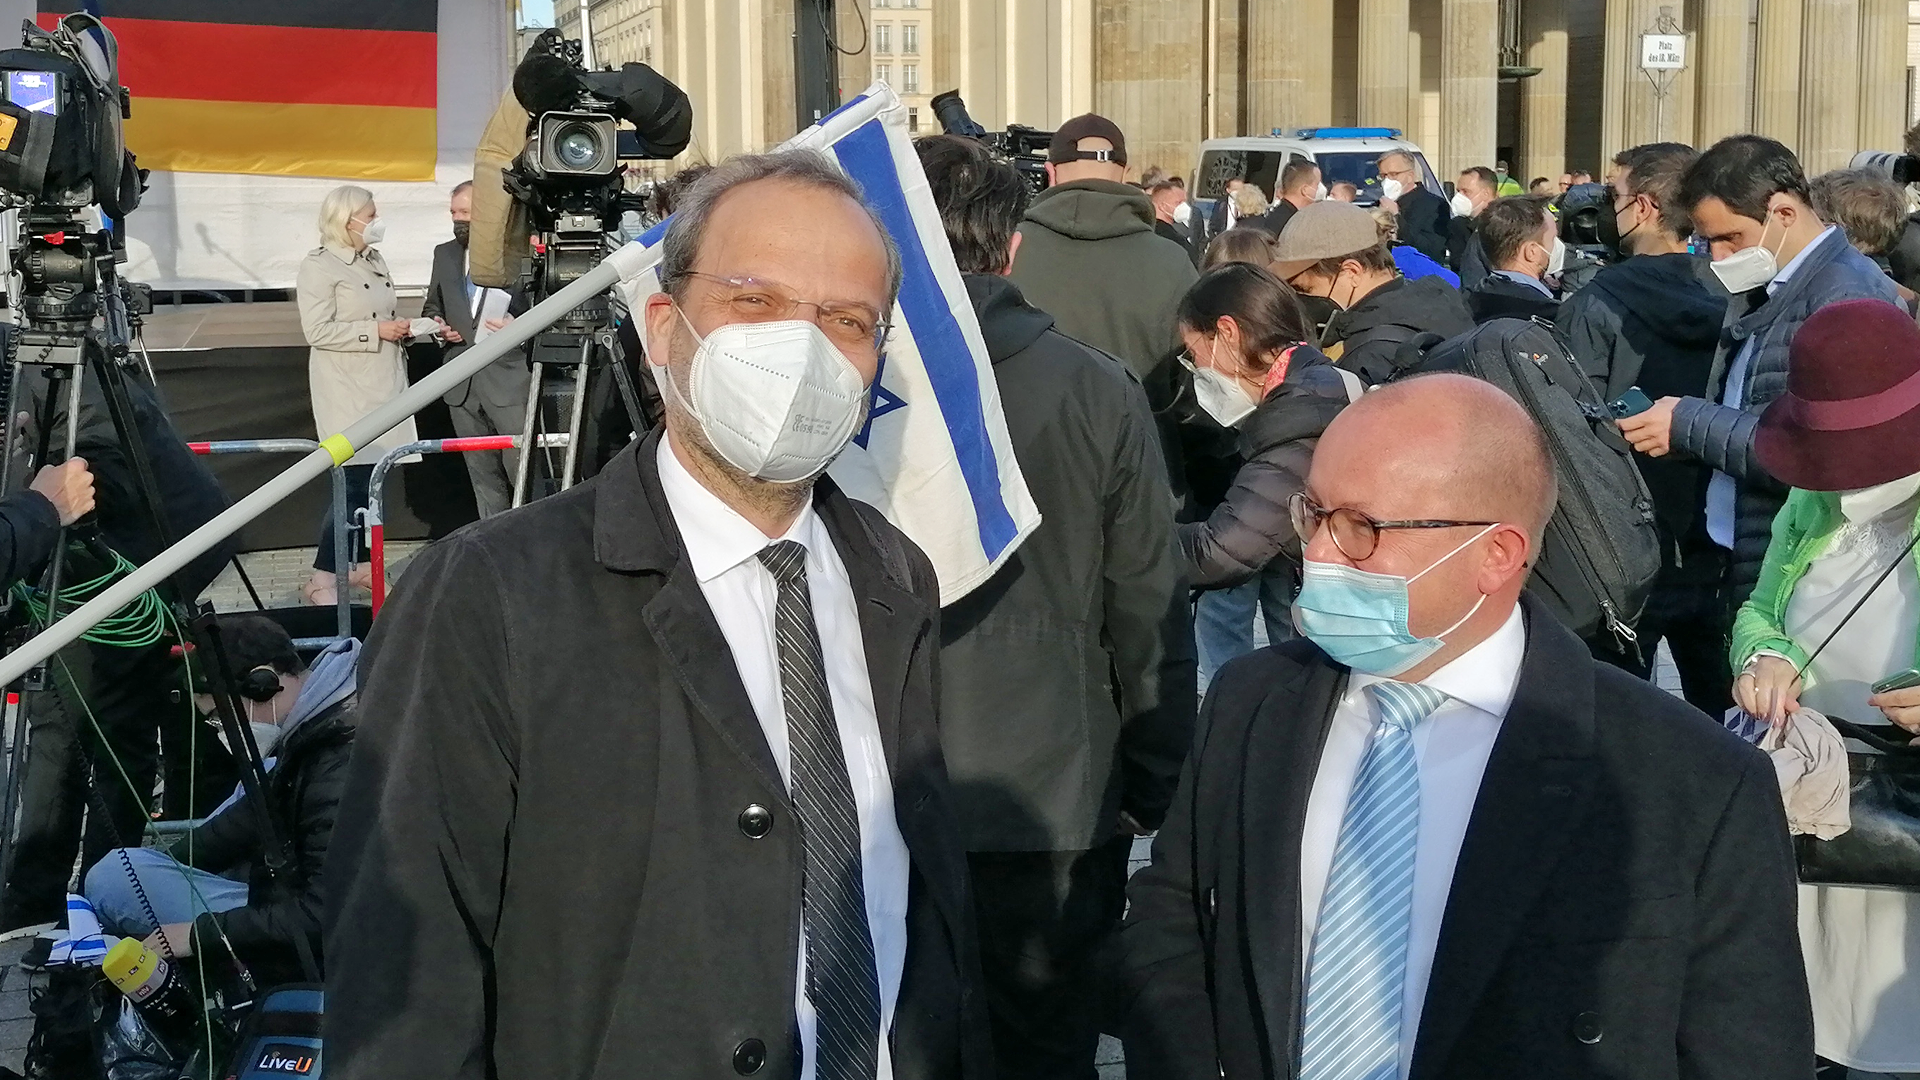 Ebenfalls vor Ort: Der Antisemitismusbeauftragte der Bundesregierung, Felix Klein, und der FDP-Politiker Frank Müller-Rosentritt